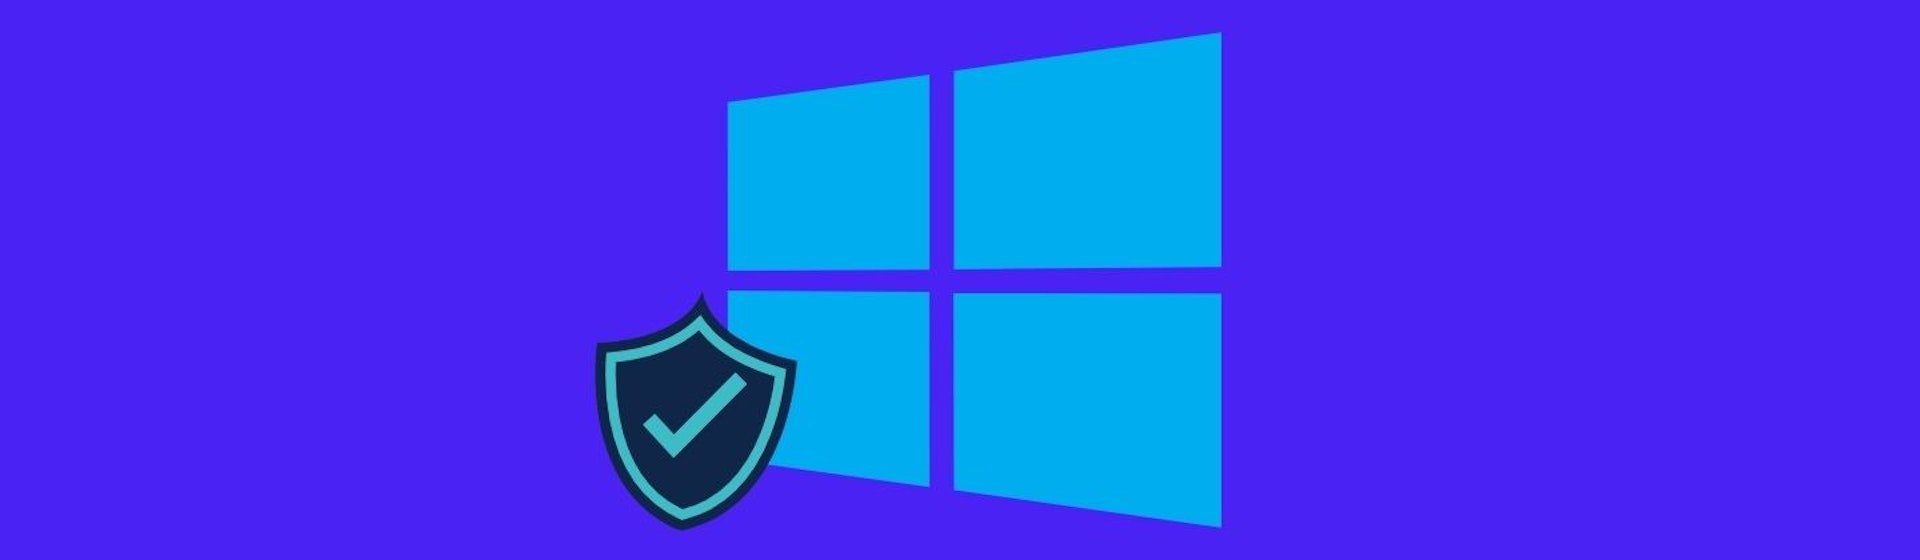 Modo a prueba de fallos Windows 10: ¿cómo iniciar en modo seguro desde tu PC?